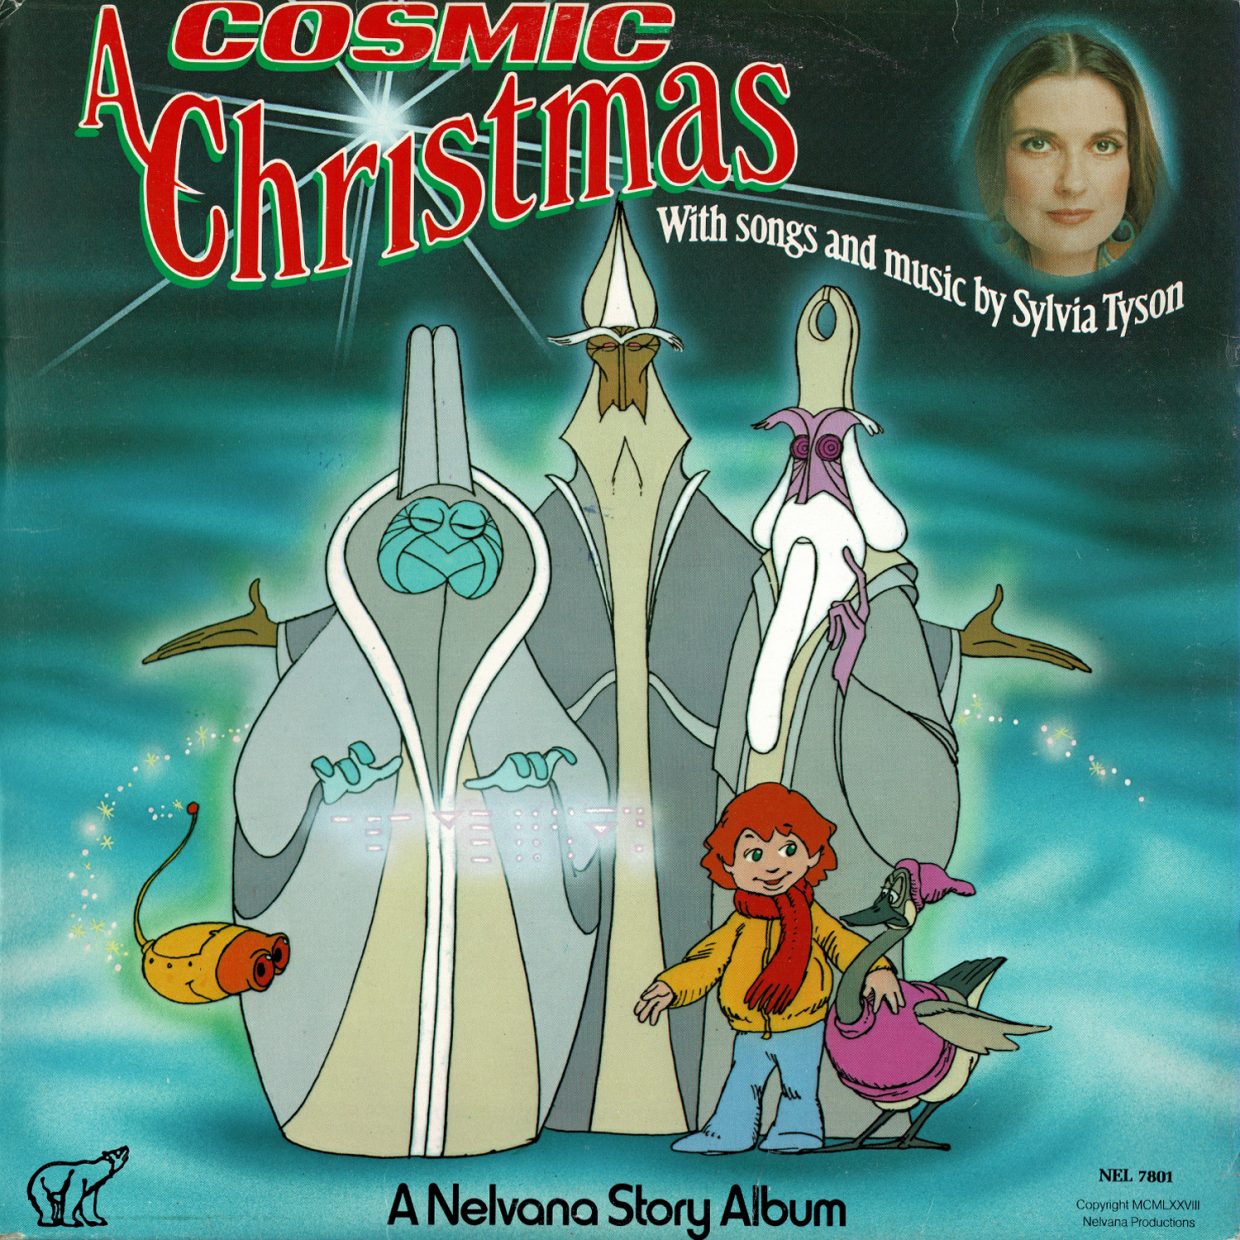 A Cosmic Christmas: A Nelvana Story Album